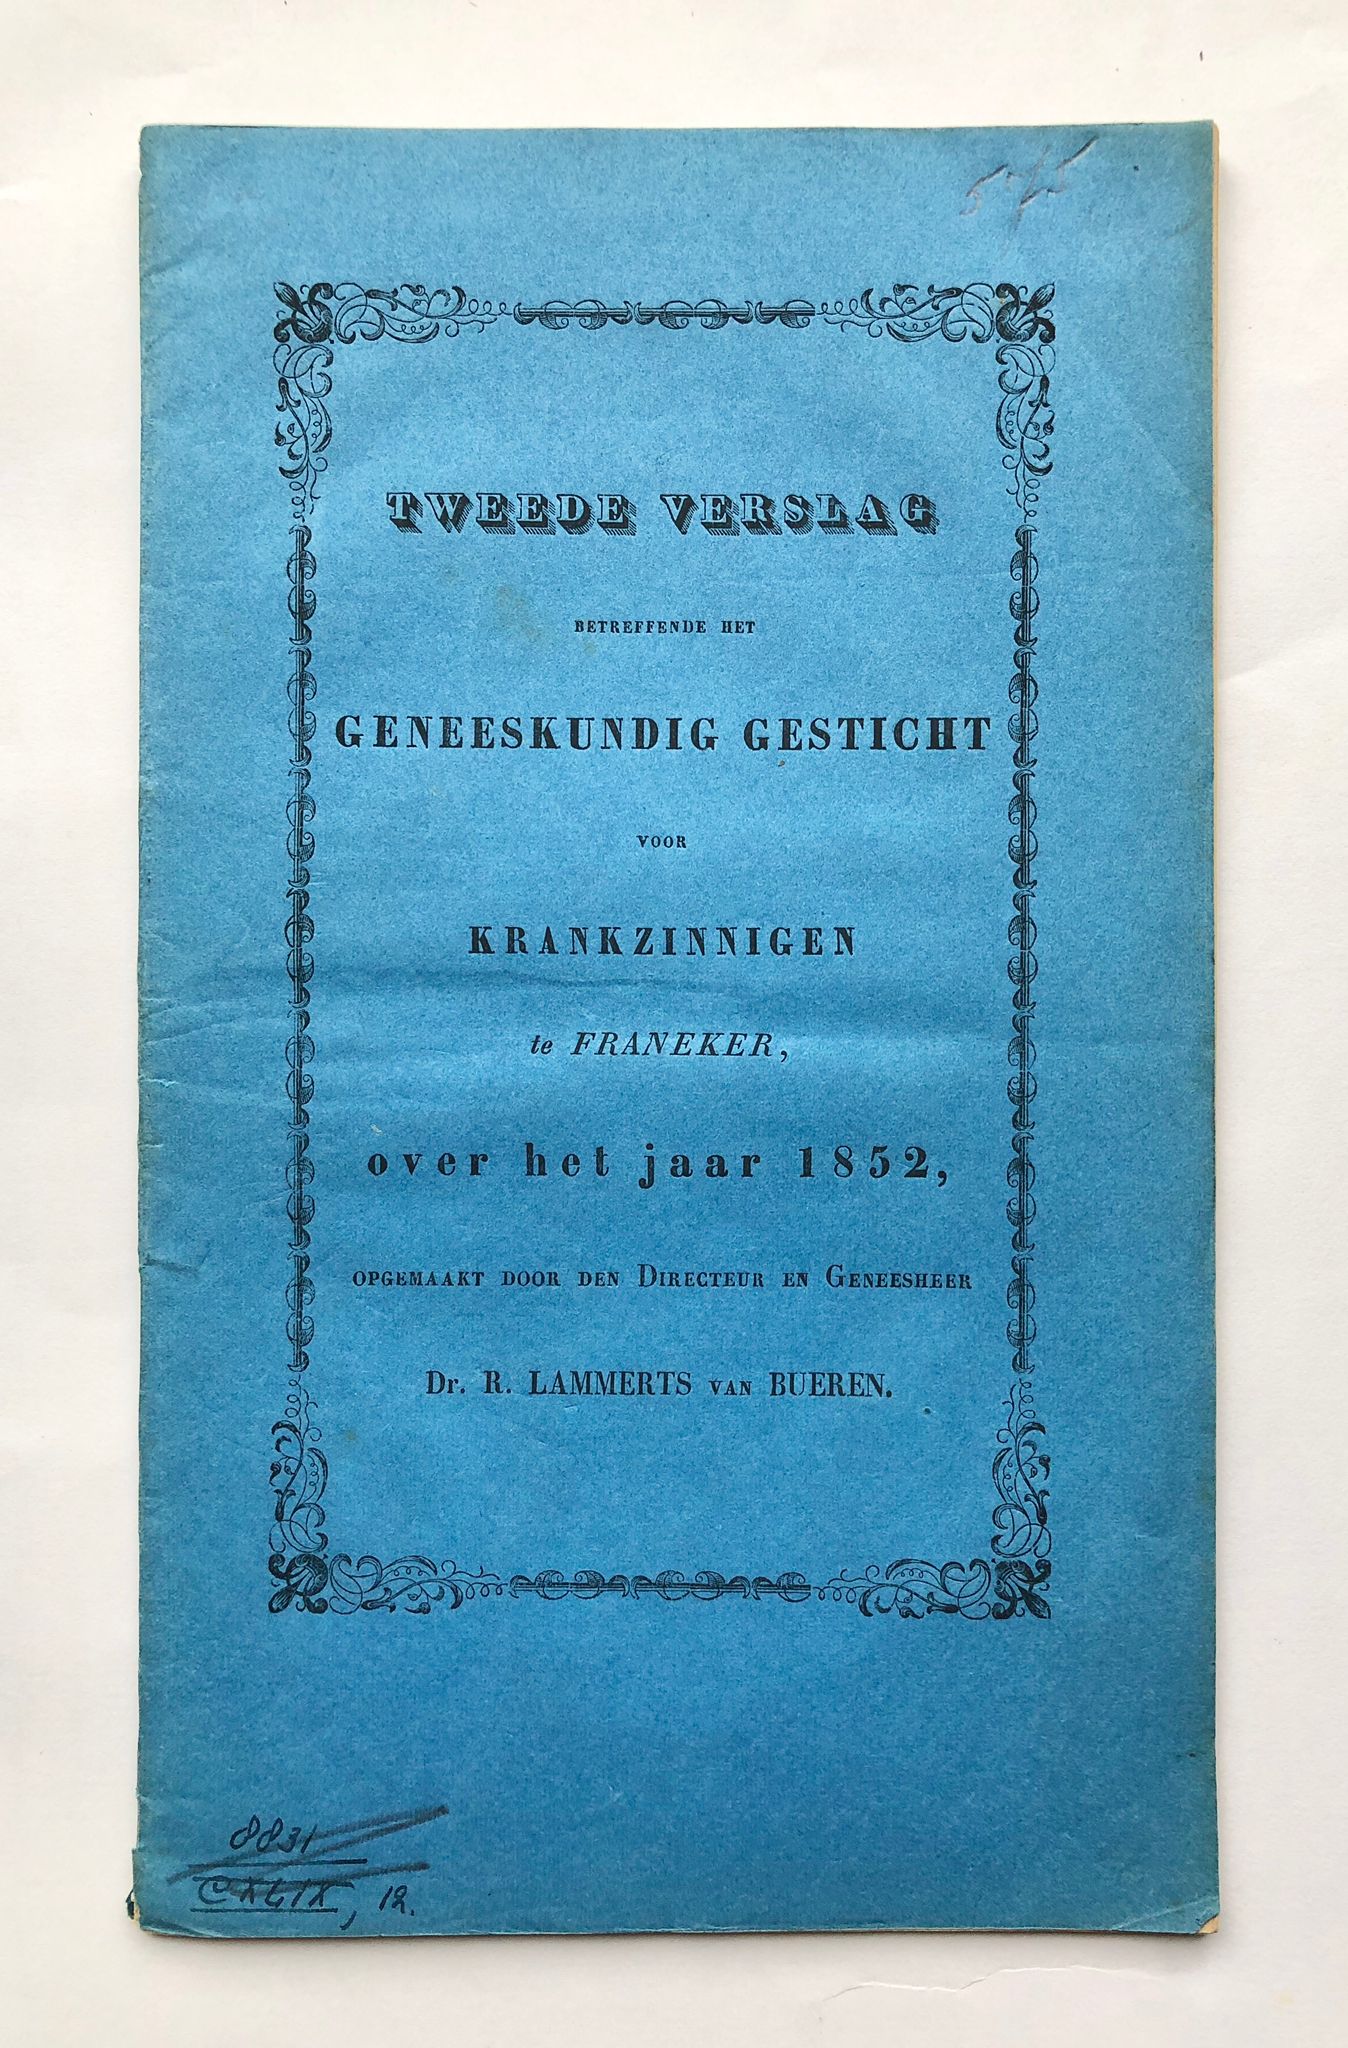 [Friesland [1853?]] Tweede verslag betreffende het Geneeskundig gesticht voor krankzinnigen te Franeker, over het jaar 1852, 34 pp.